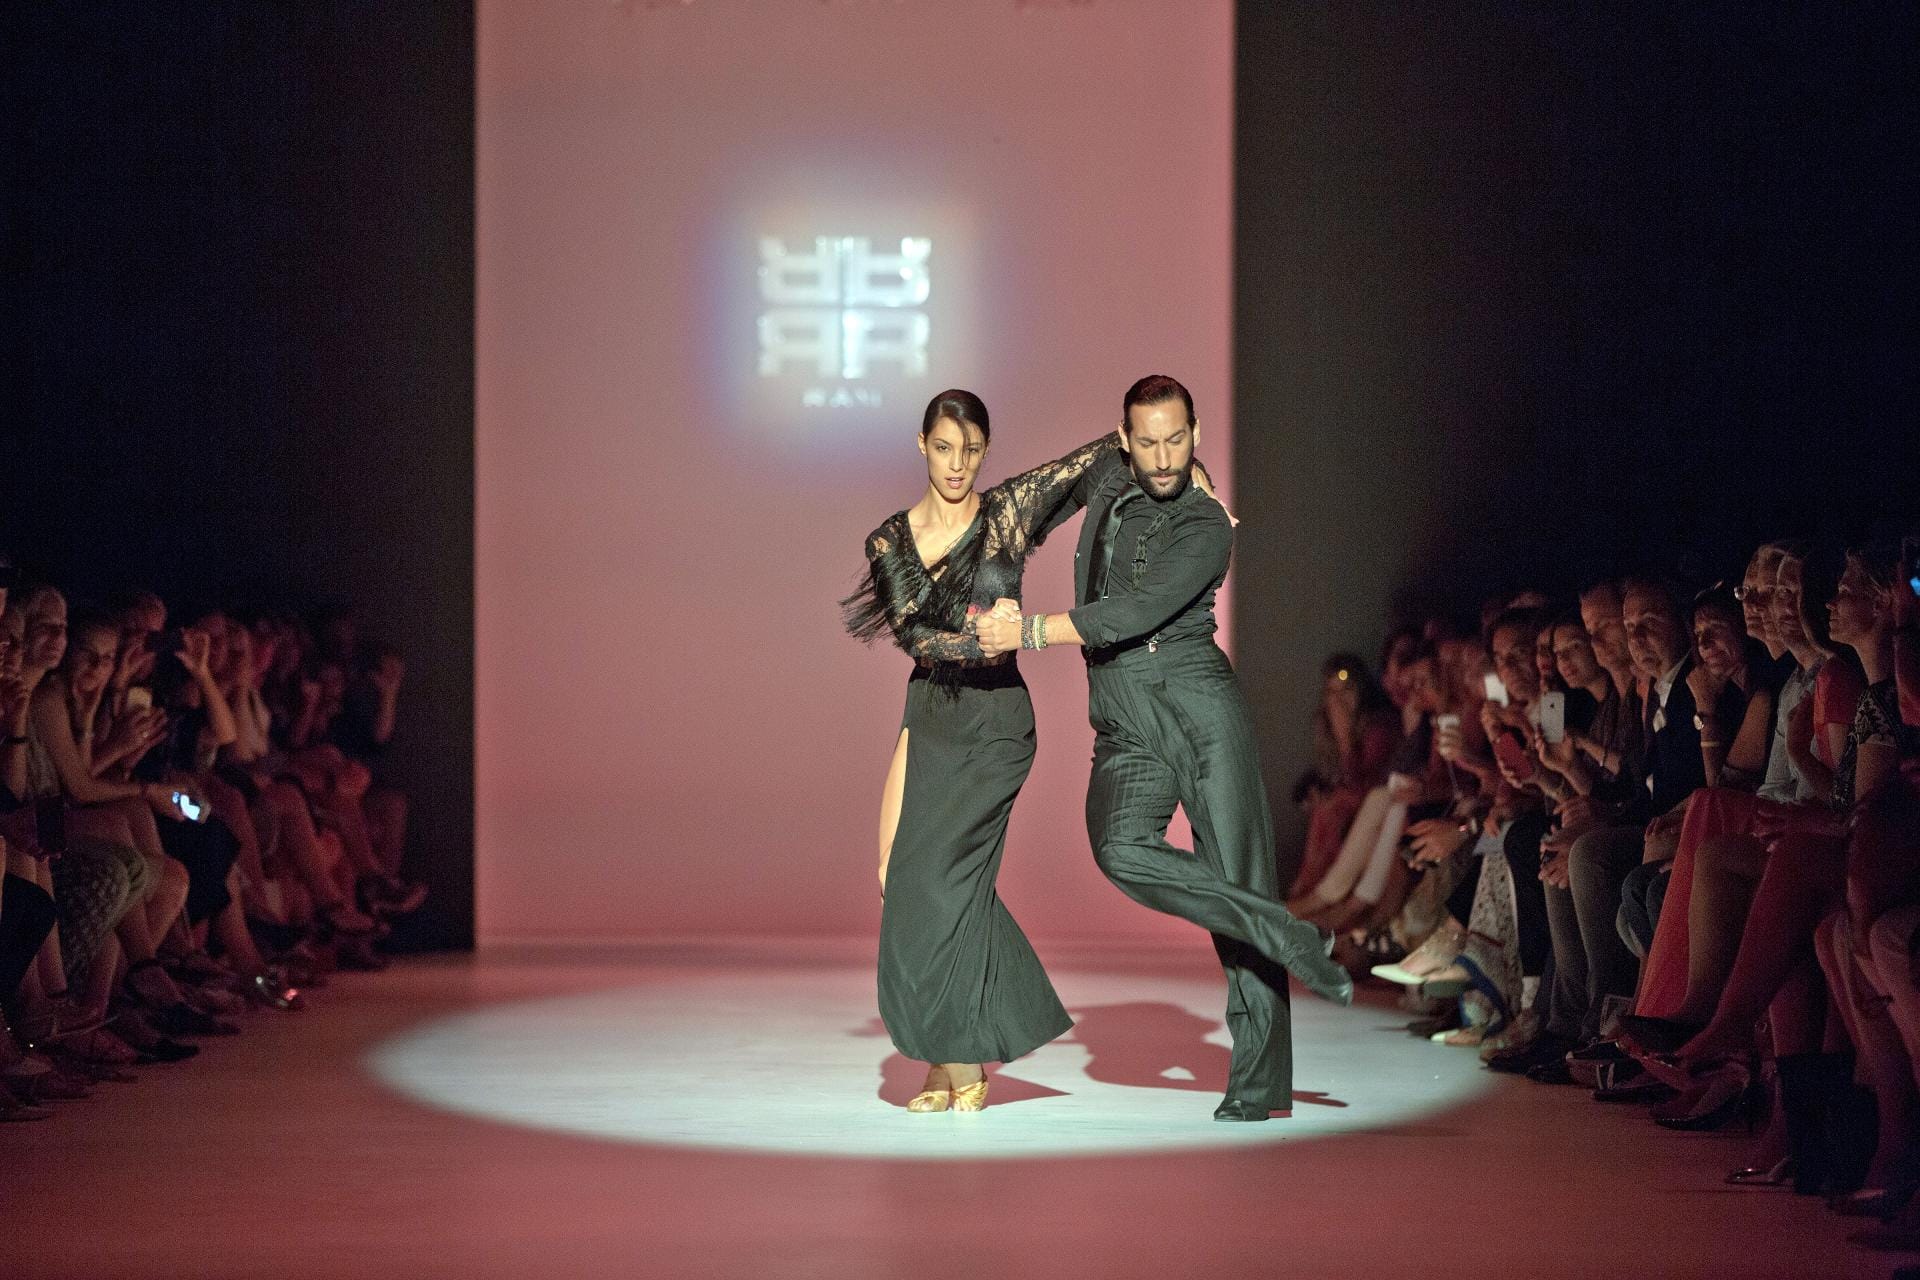 Mir und Sinató eröffneten mit einem leidenschaftlichen Tanz die Show des Labels Riani.